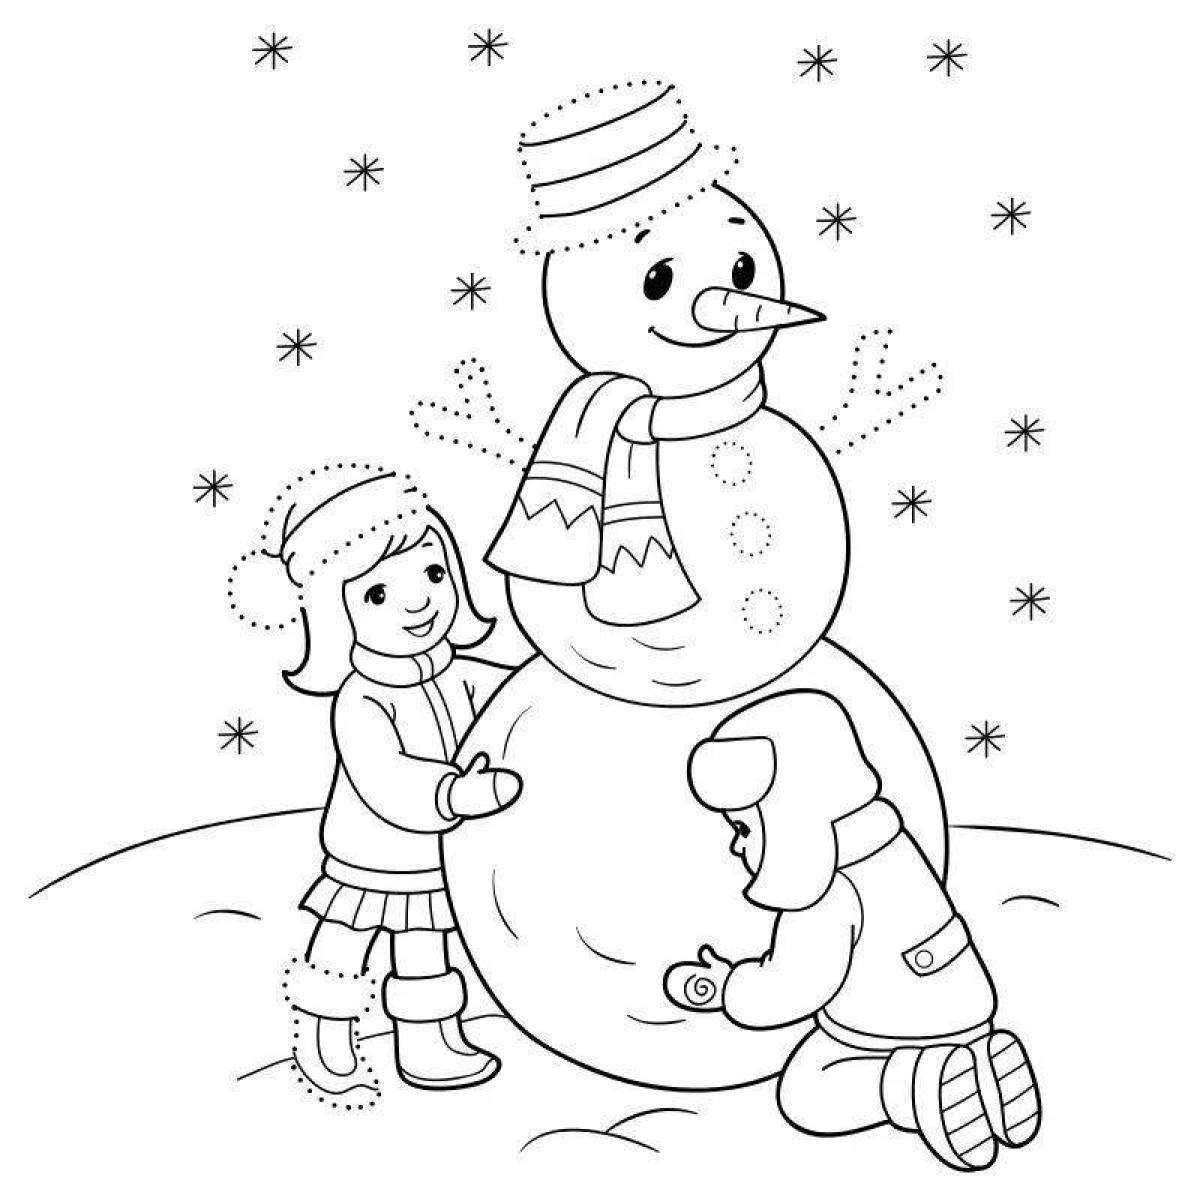 Юмористическая раскраска снеговик для детей 6-7 лет